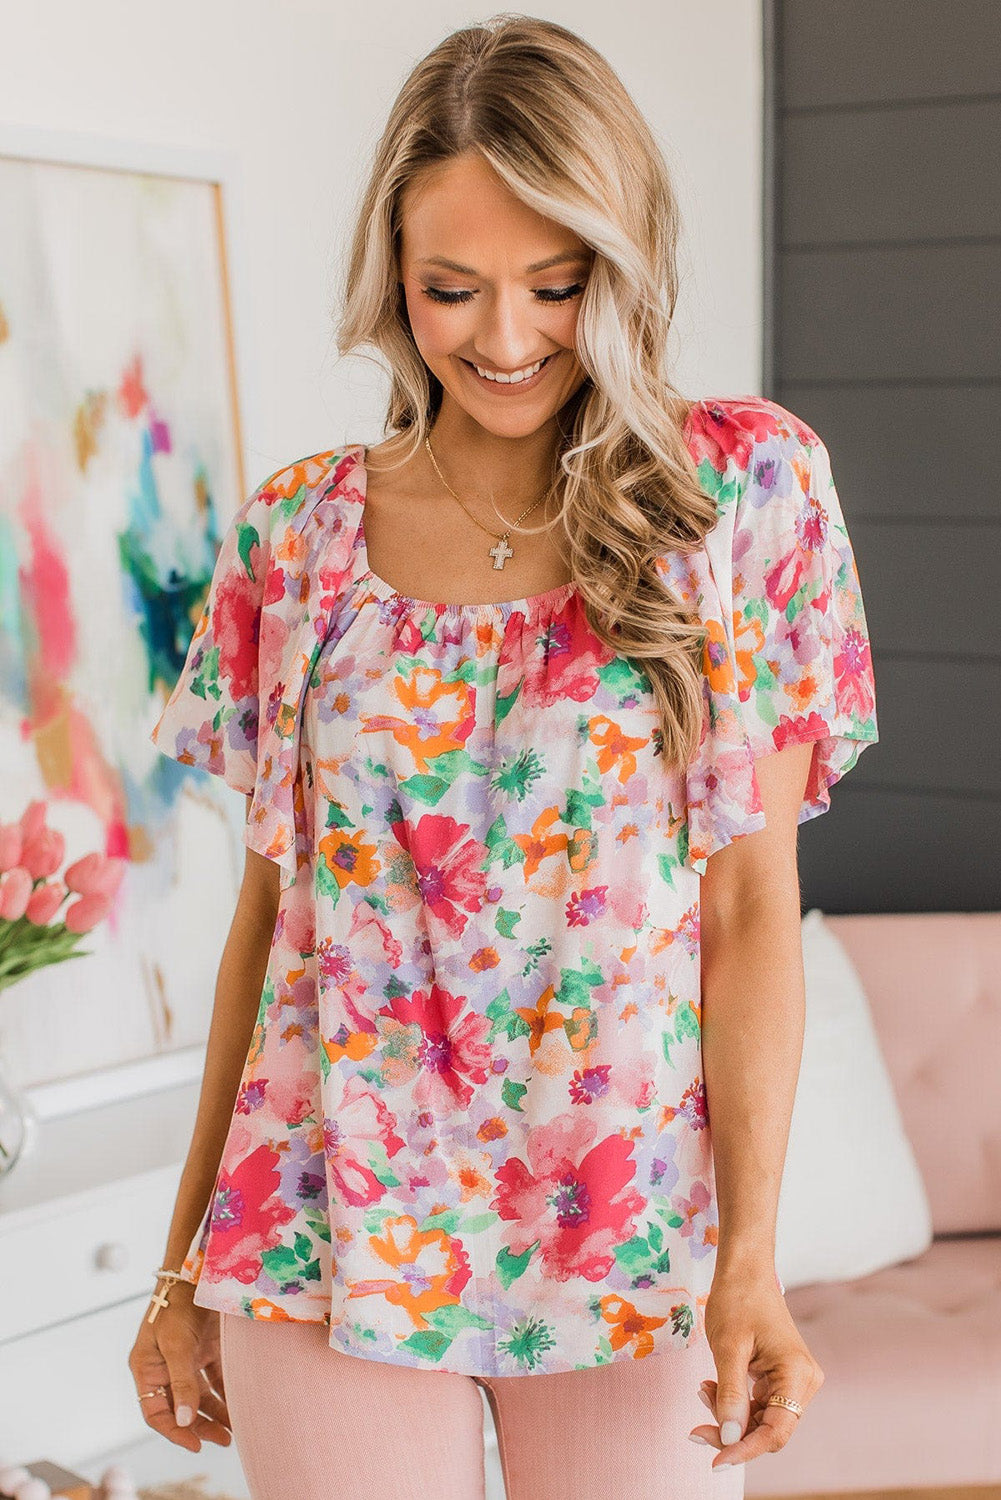 Mehrfarbige Bluse mit Aquarell-Blumenmuster, eckigem Ausschnitt und Rüschenärmeln